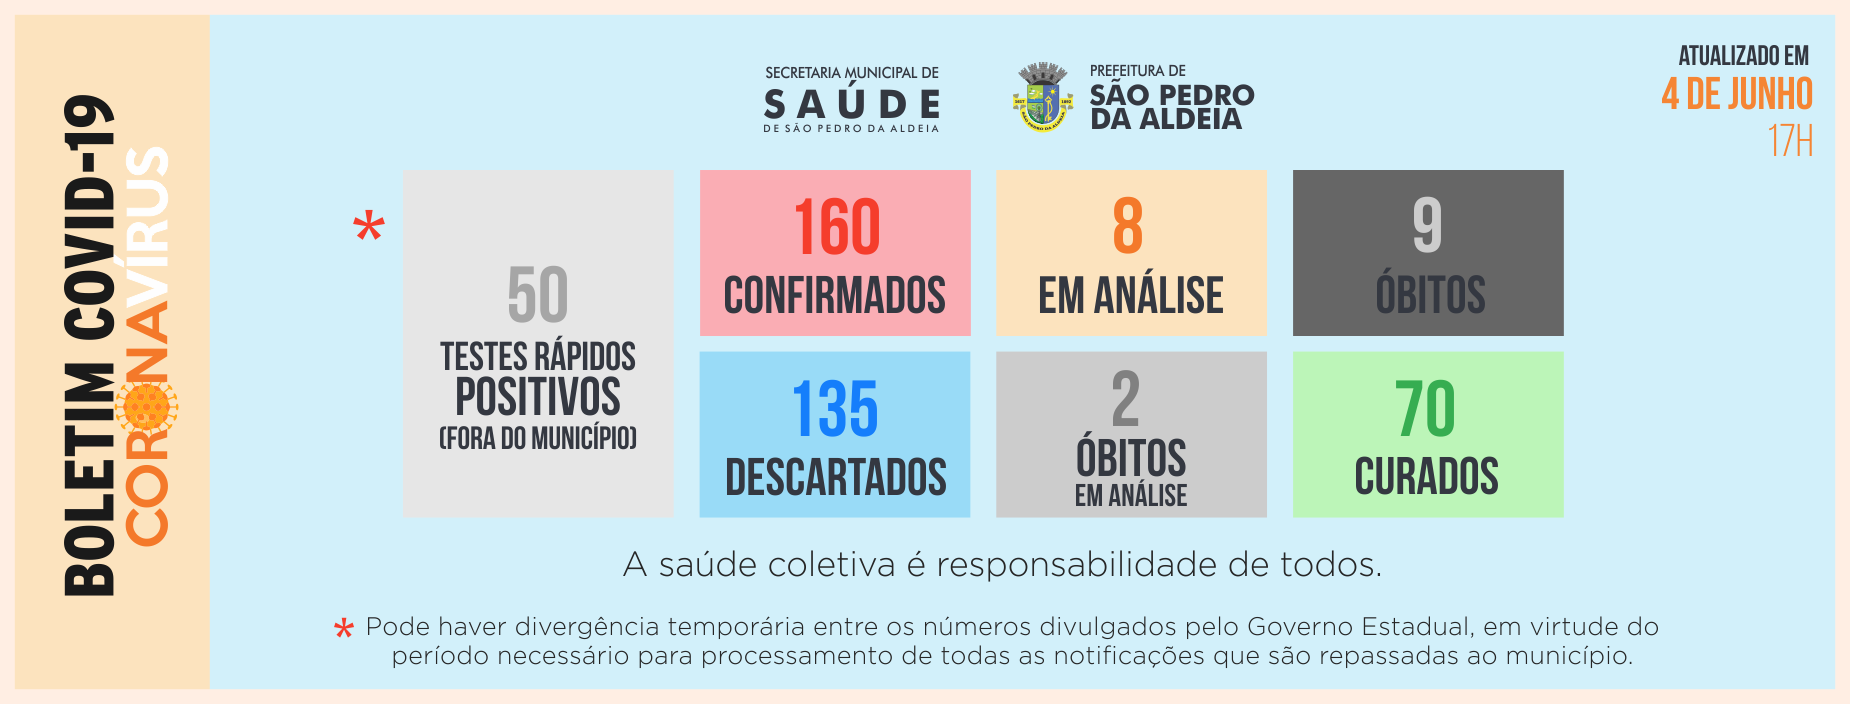 São Pedro da Aldeia registra 210 casos confirmados de Covid-19